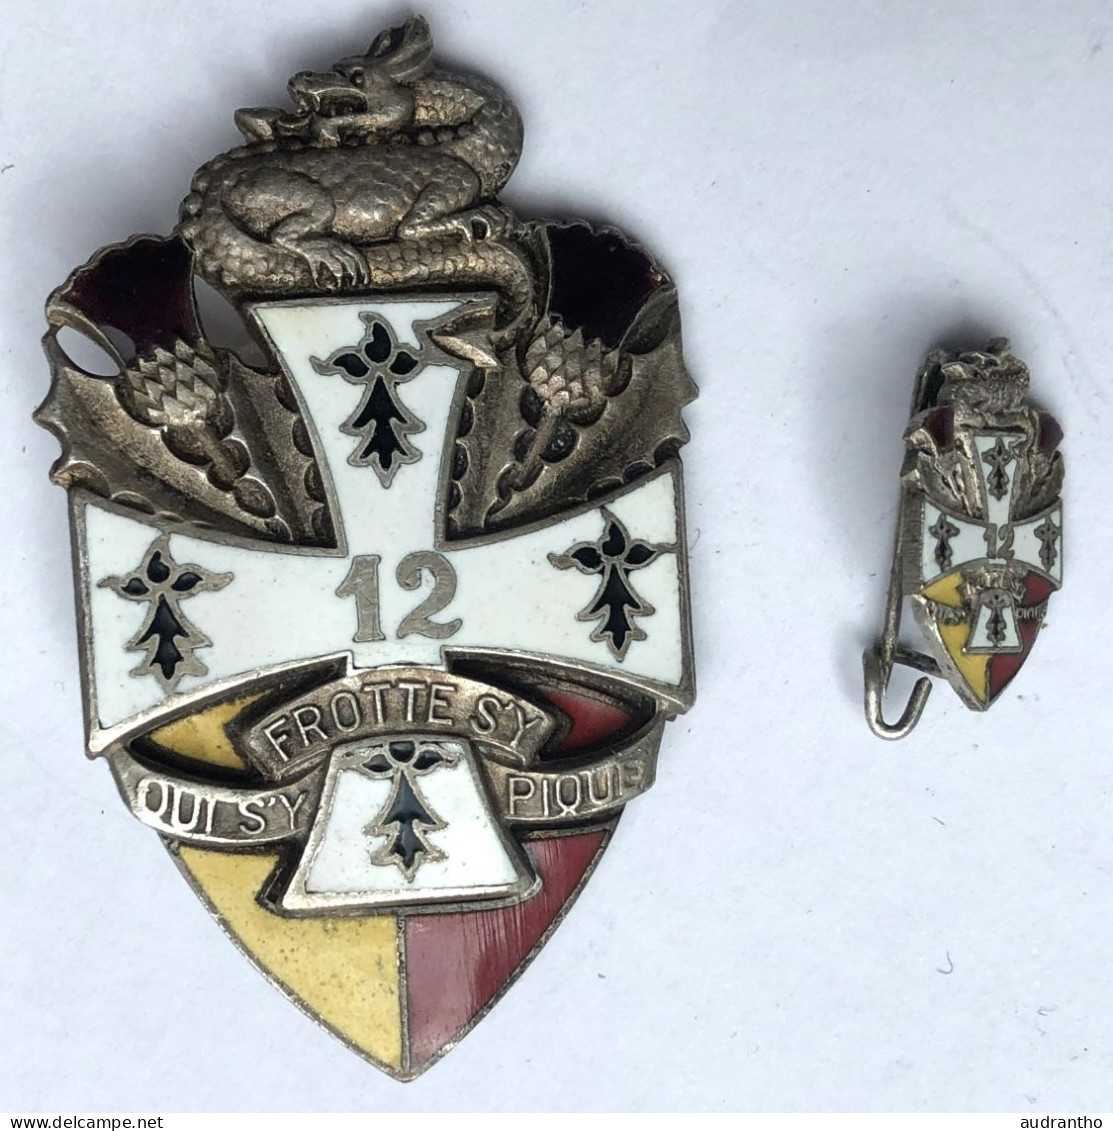 2 Insigne Militaire - 12ème Régiment De Dragons - Qui S'y Frotte S'y Pique - Arts Et Insignes - Armée De Terre